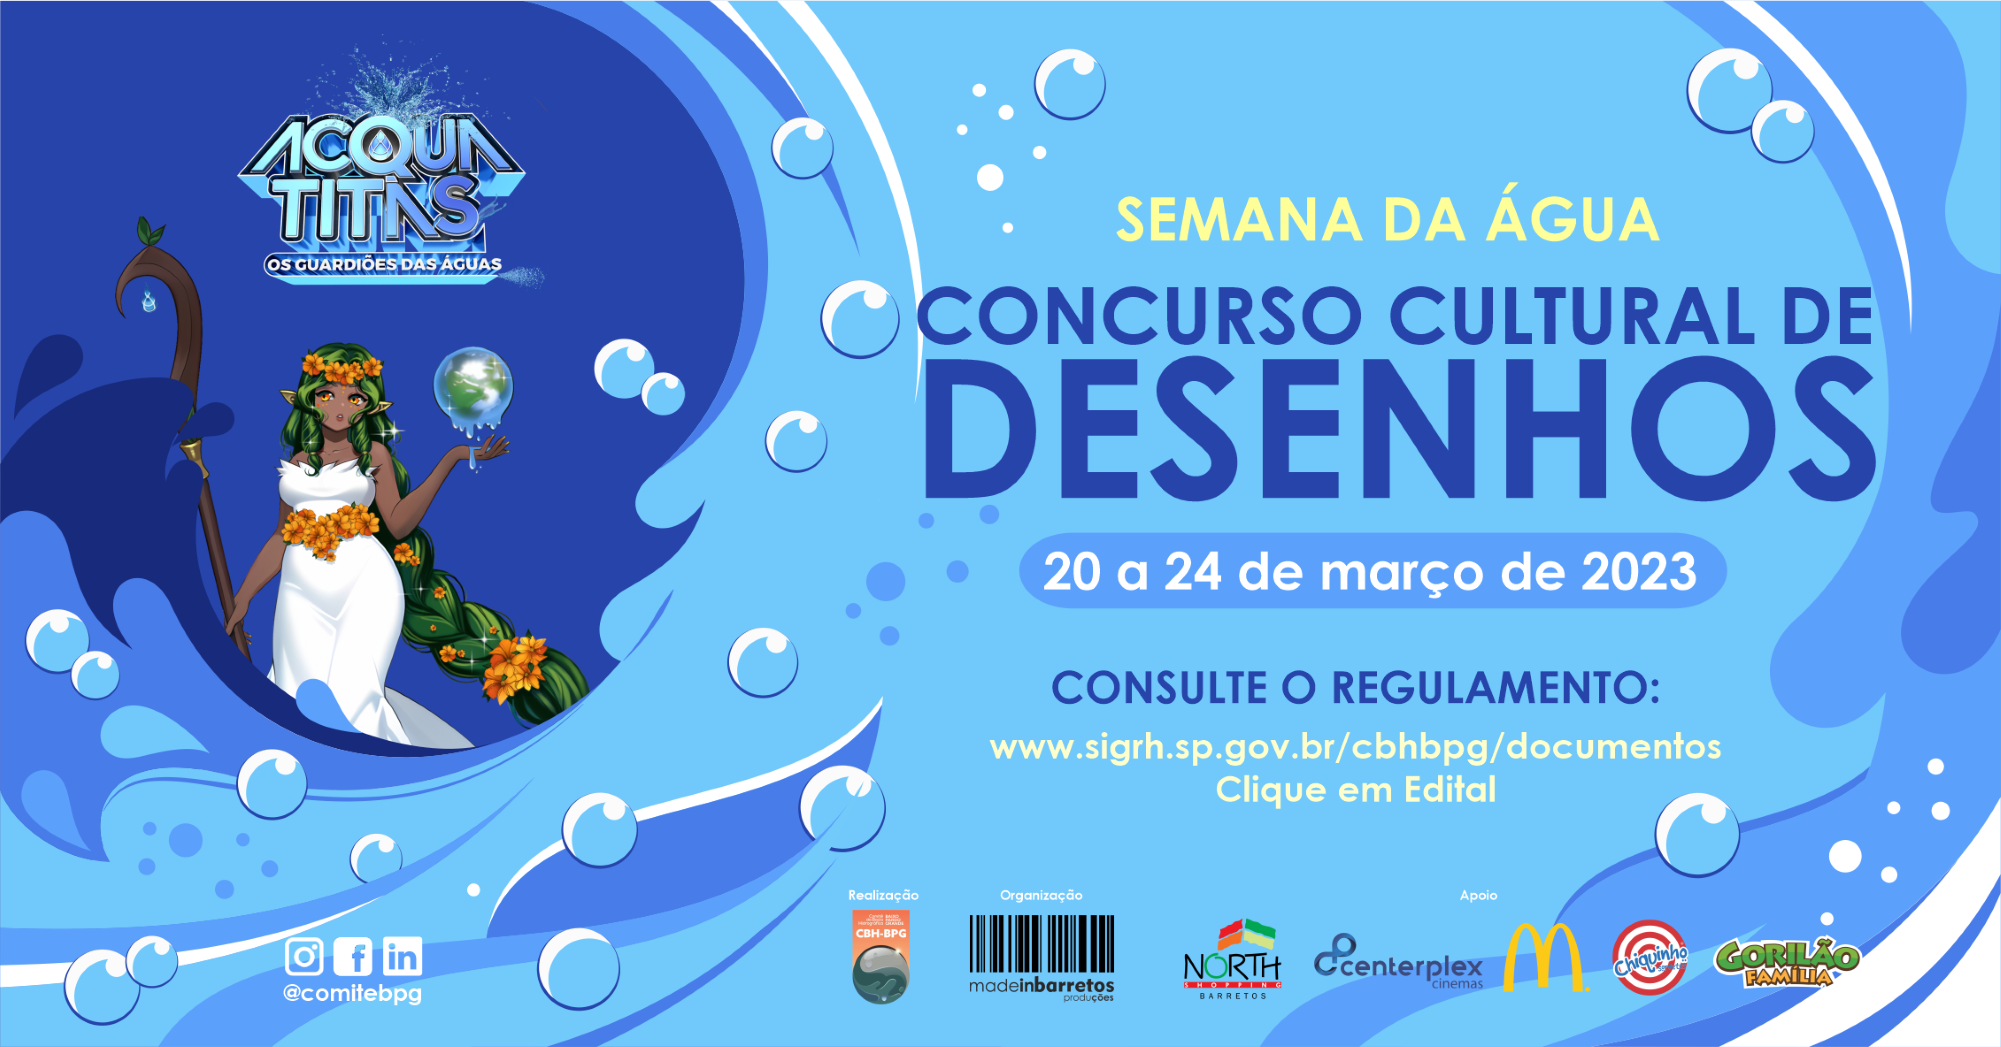 Semana da Água: Projeto Acqua Titãs começa a ser realizado nos 13 municípios do Comitê da Bacia Hidrográfica do Baixo Pardo/Grande